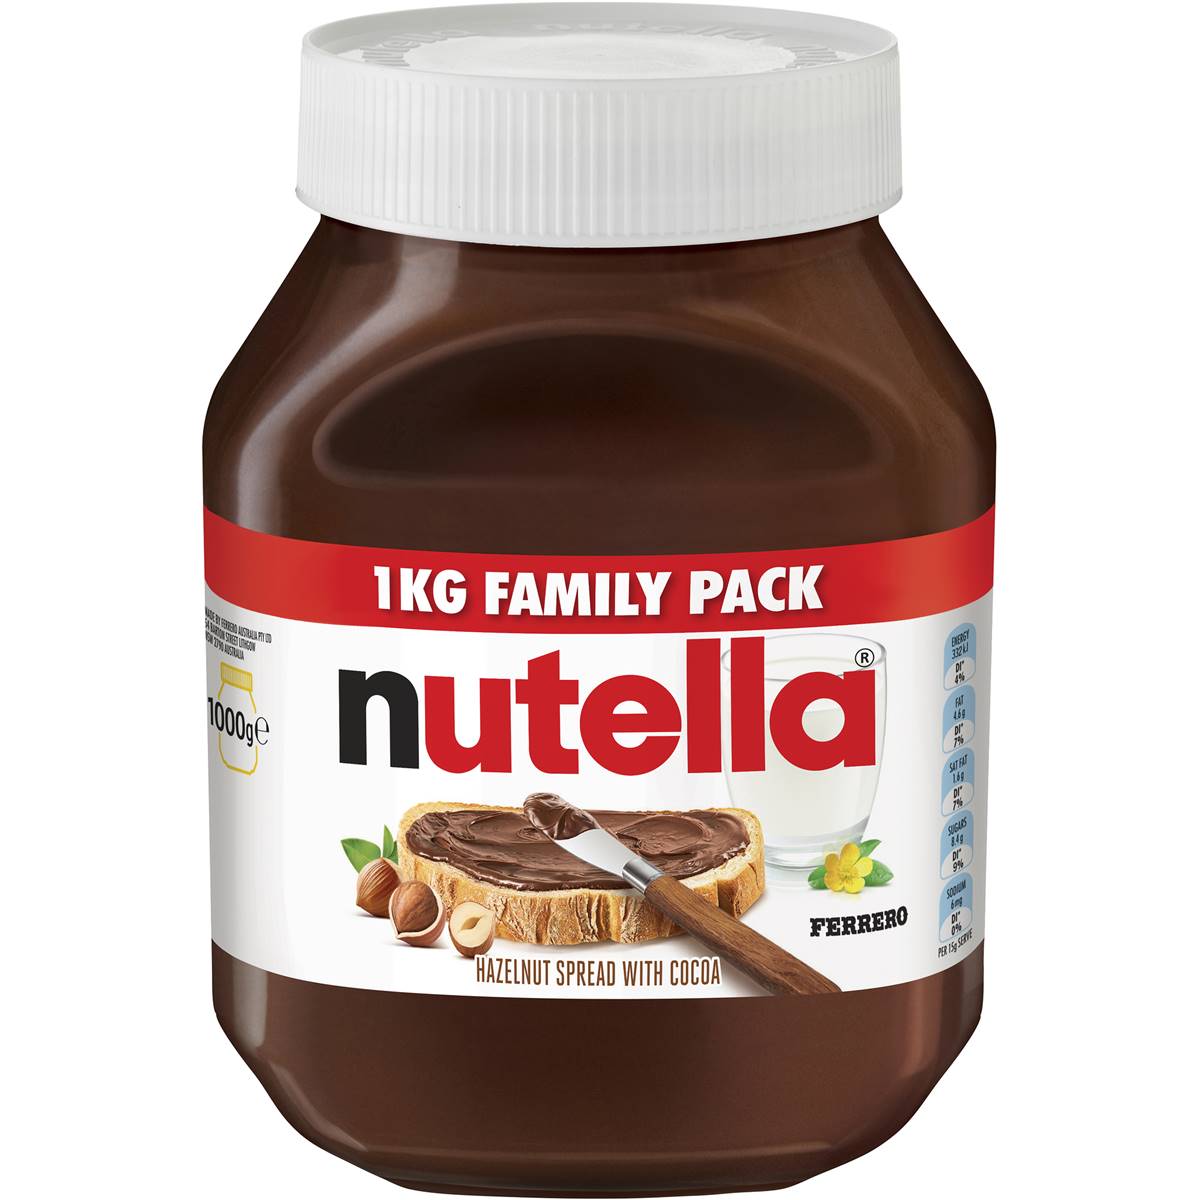 Nutella Spread 1kg